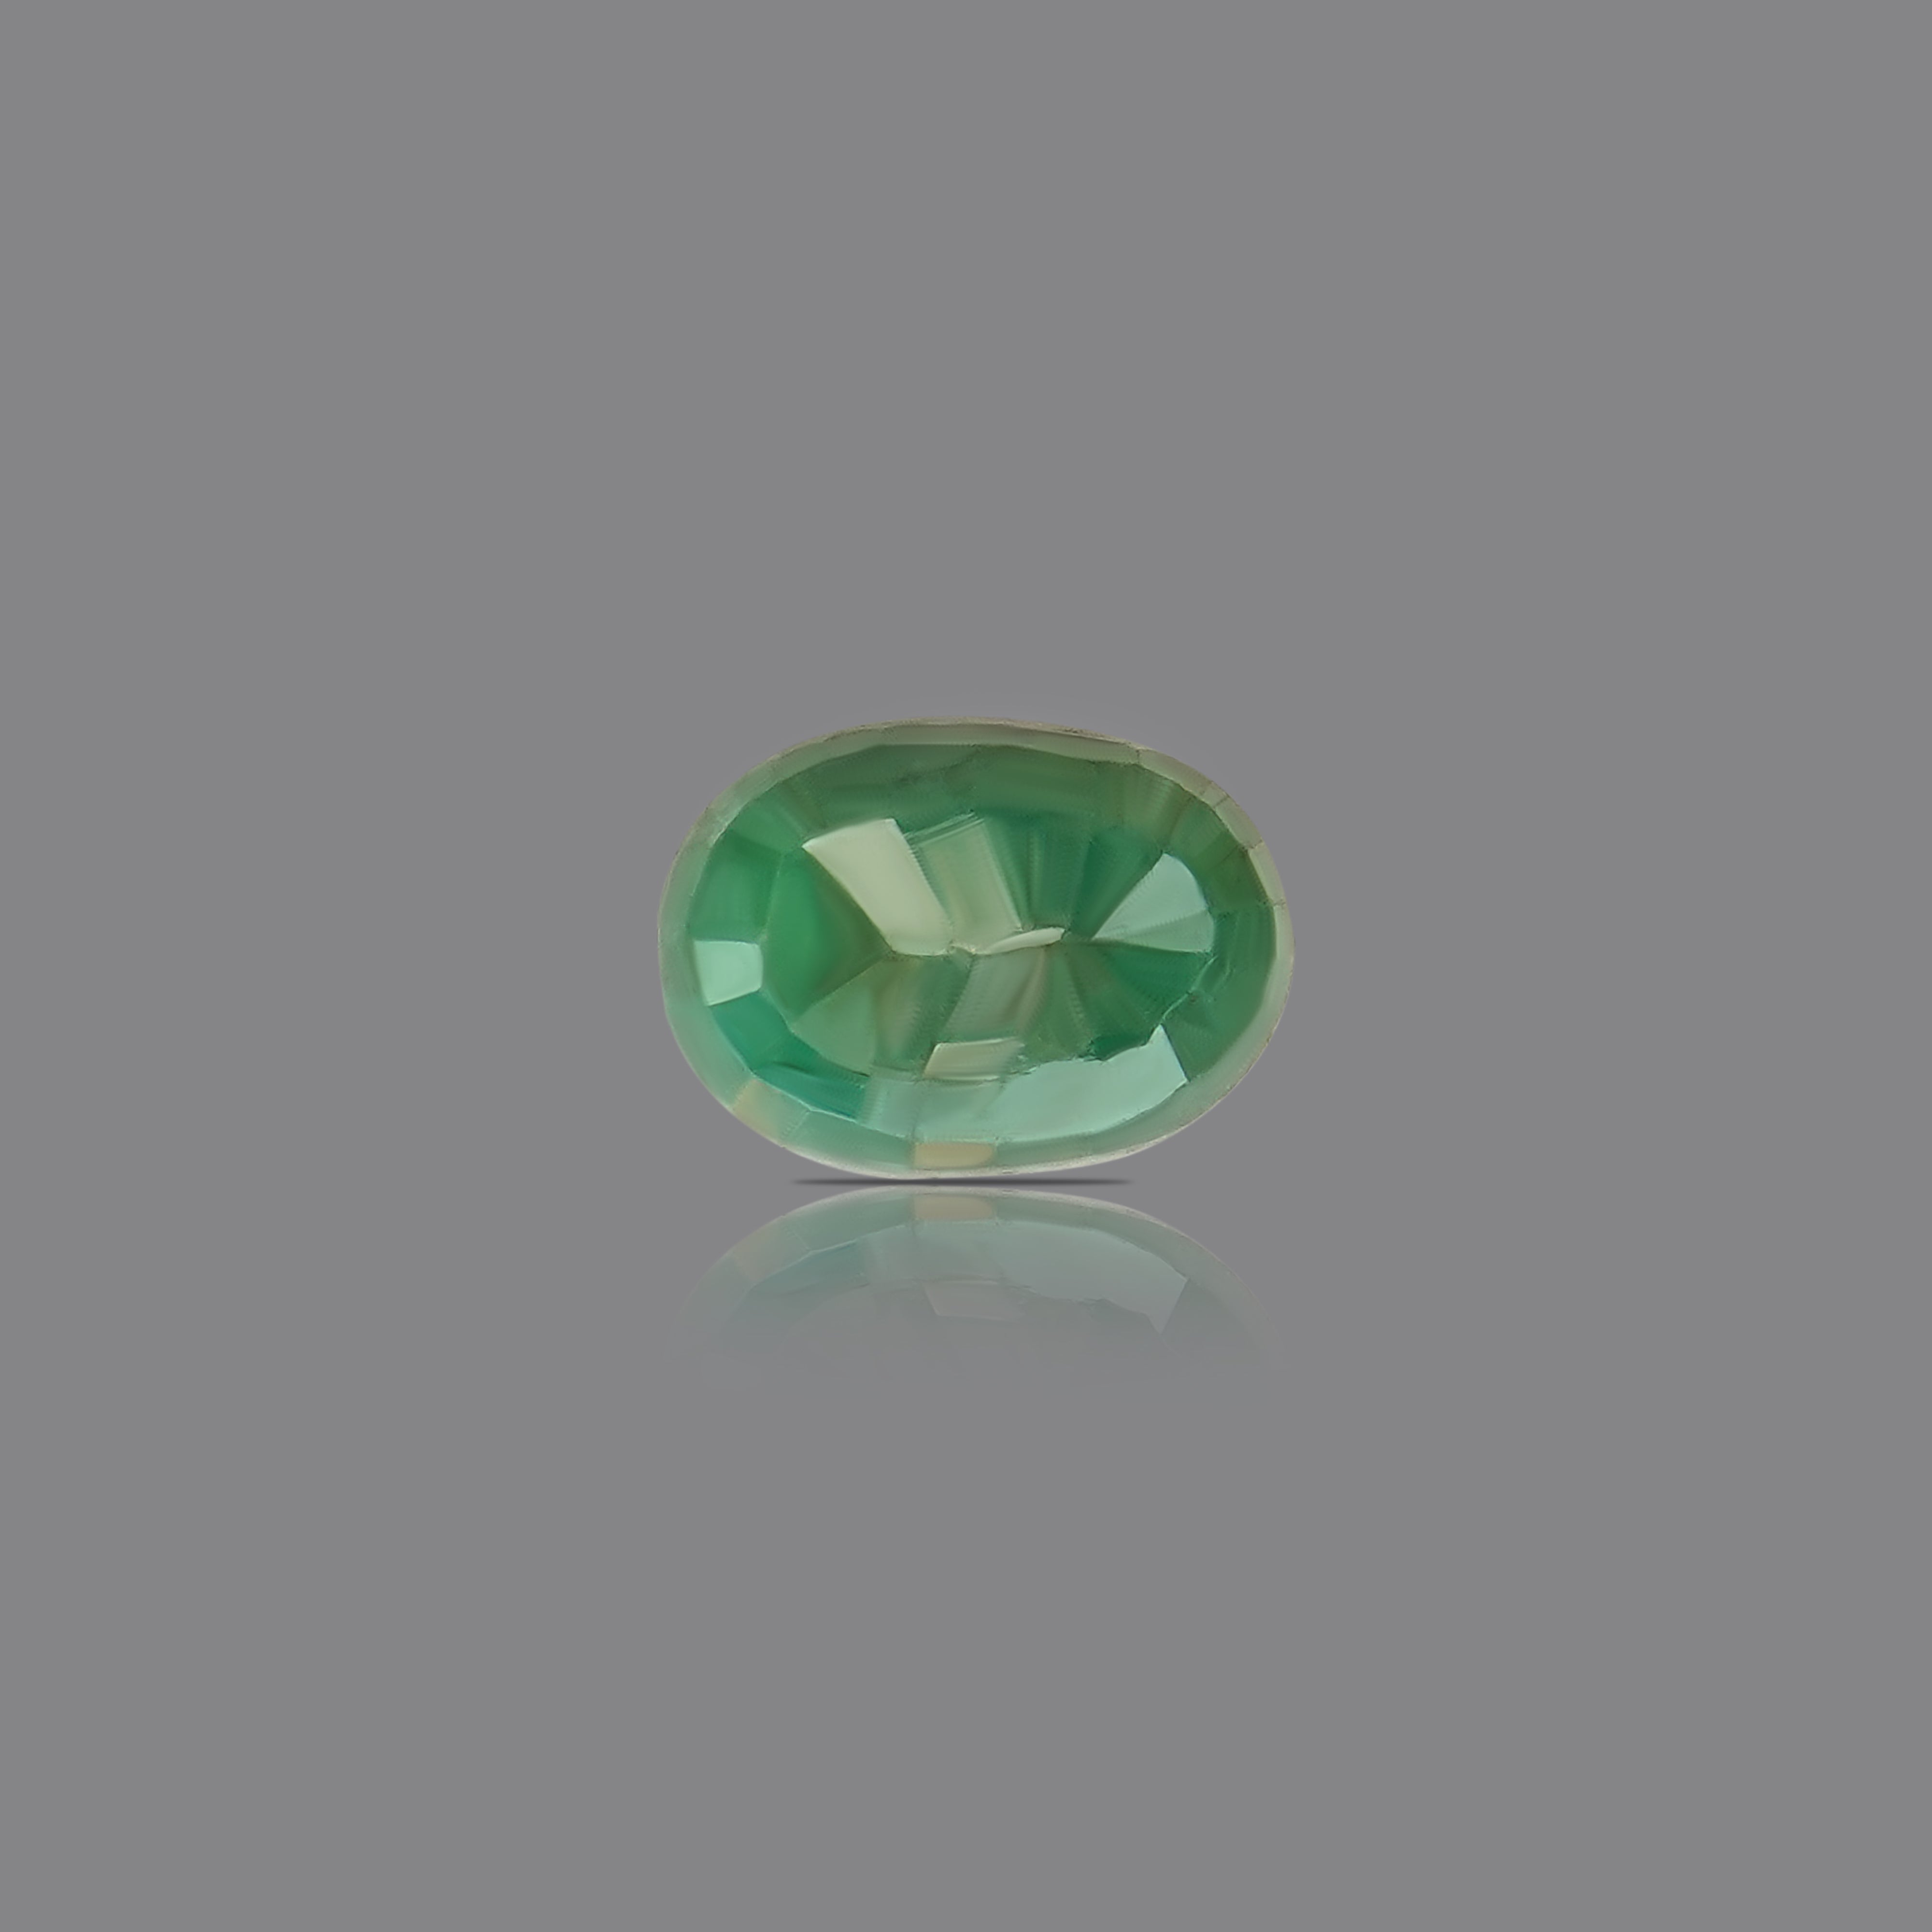 Panna- Emerald (7.16 Carat)